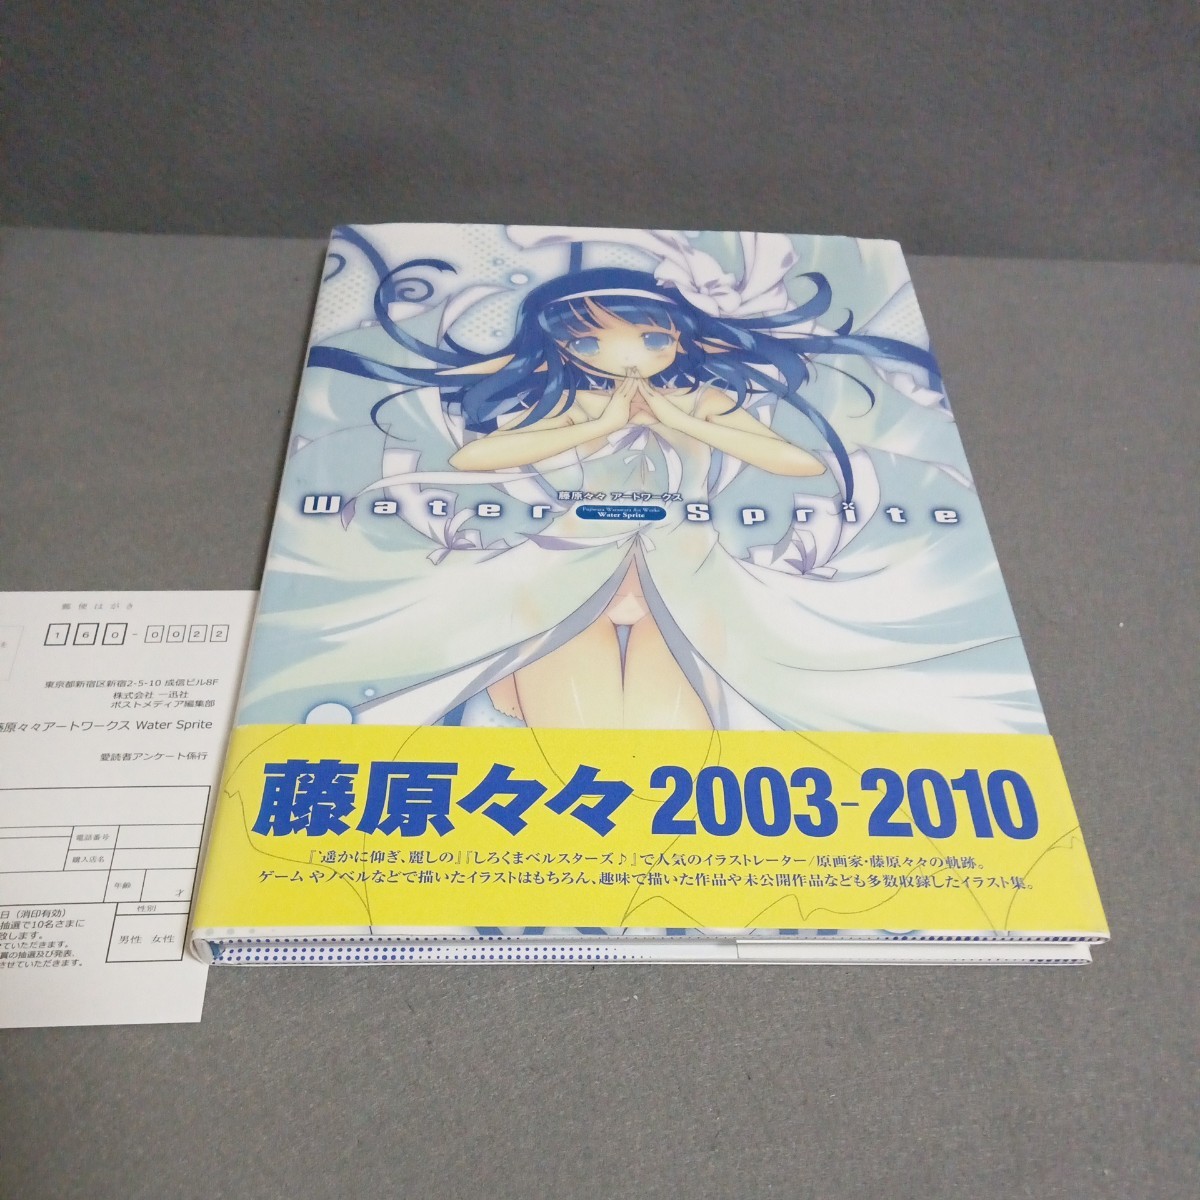 藤原々々 アートワークス Water Sprite 2003 - 2010 一迅社 帯裂け 初版の画像1